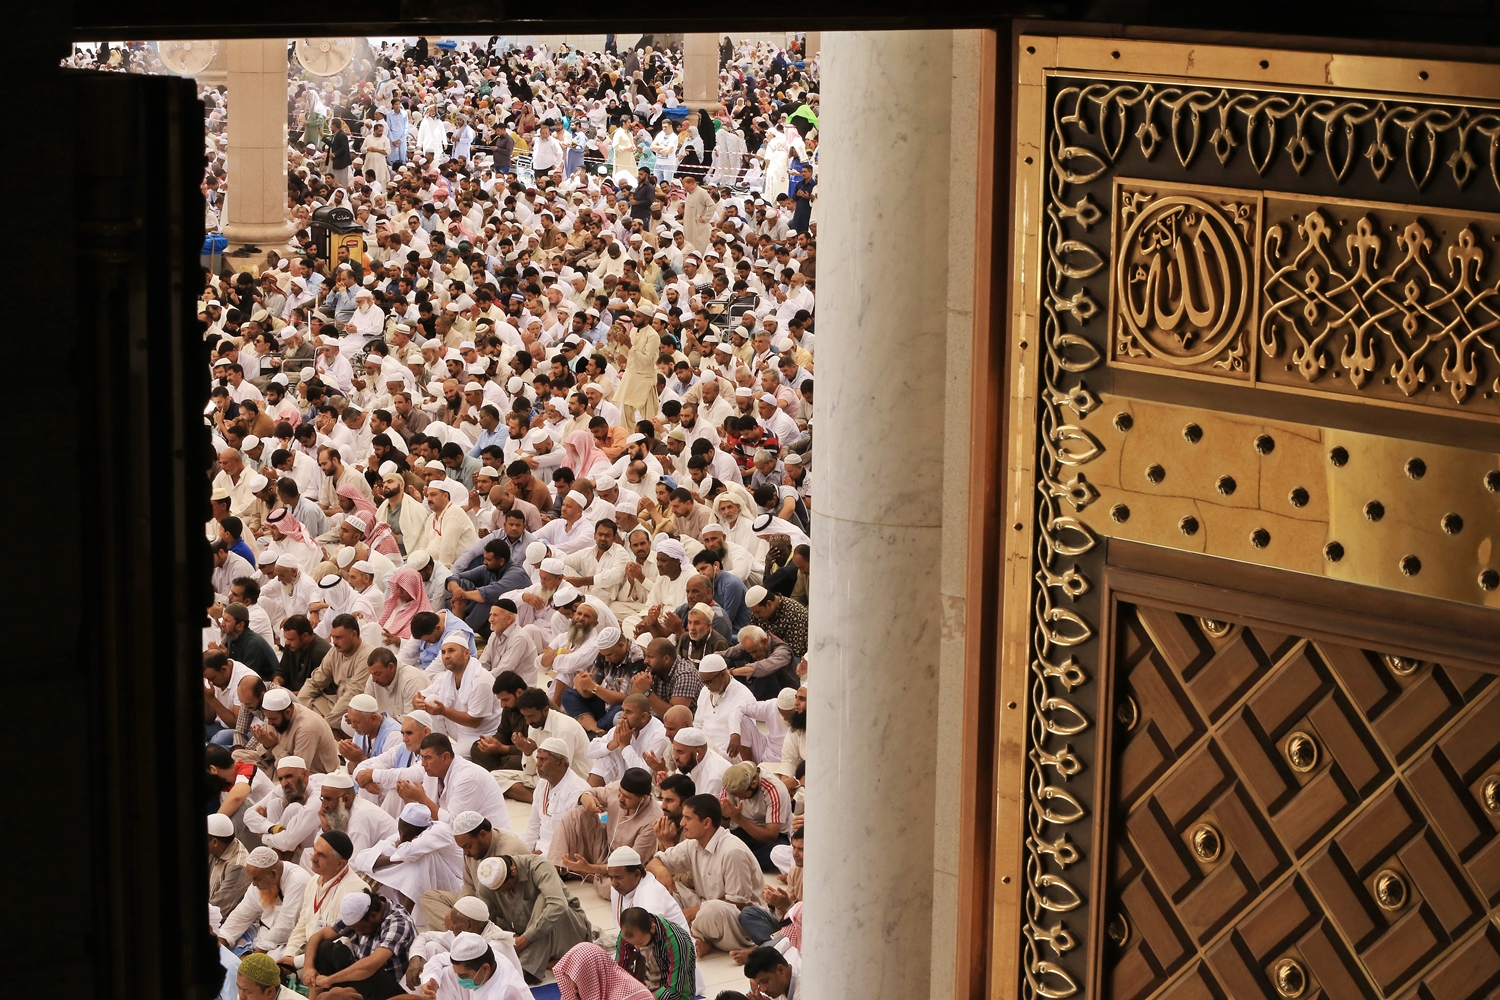 خطيب المسجد النبوي: التذكر النافع ما يُحدث الخوف الحقيقي من الخالق